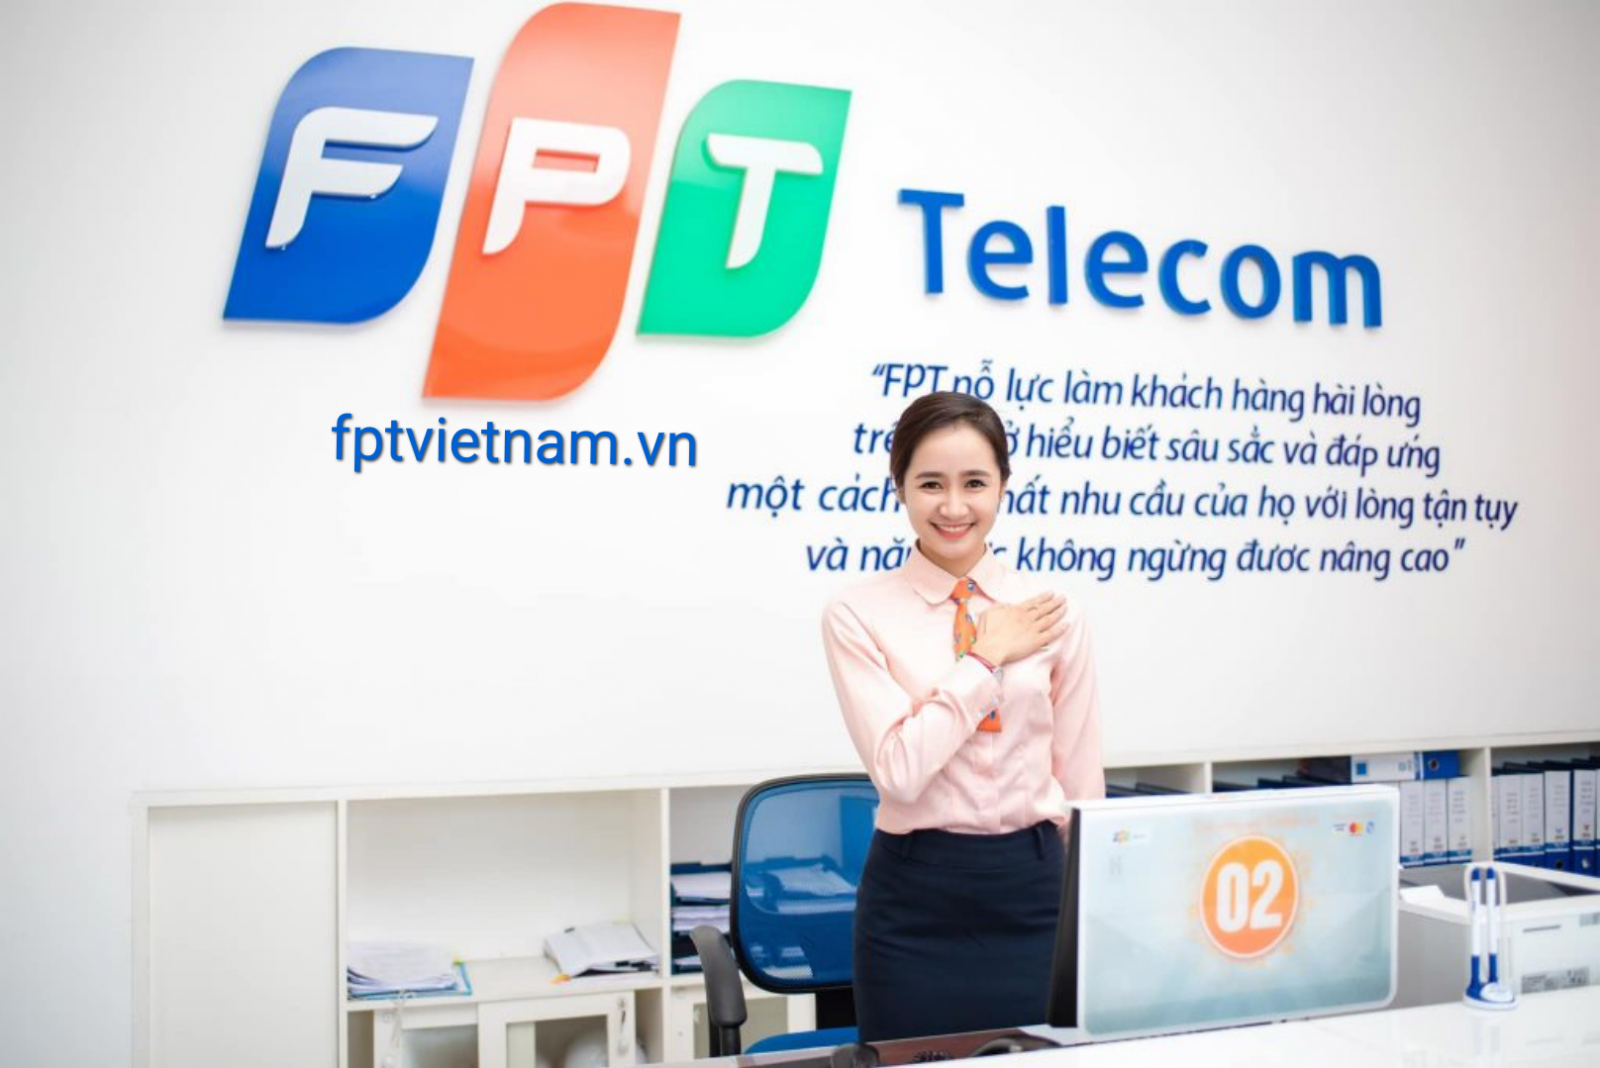 dịch vụ fpt telecom Hà Nội